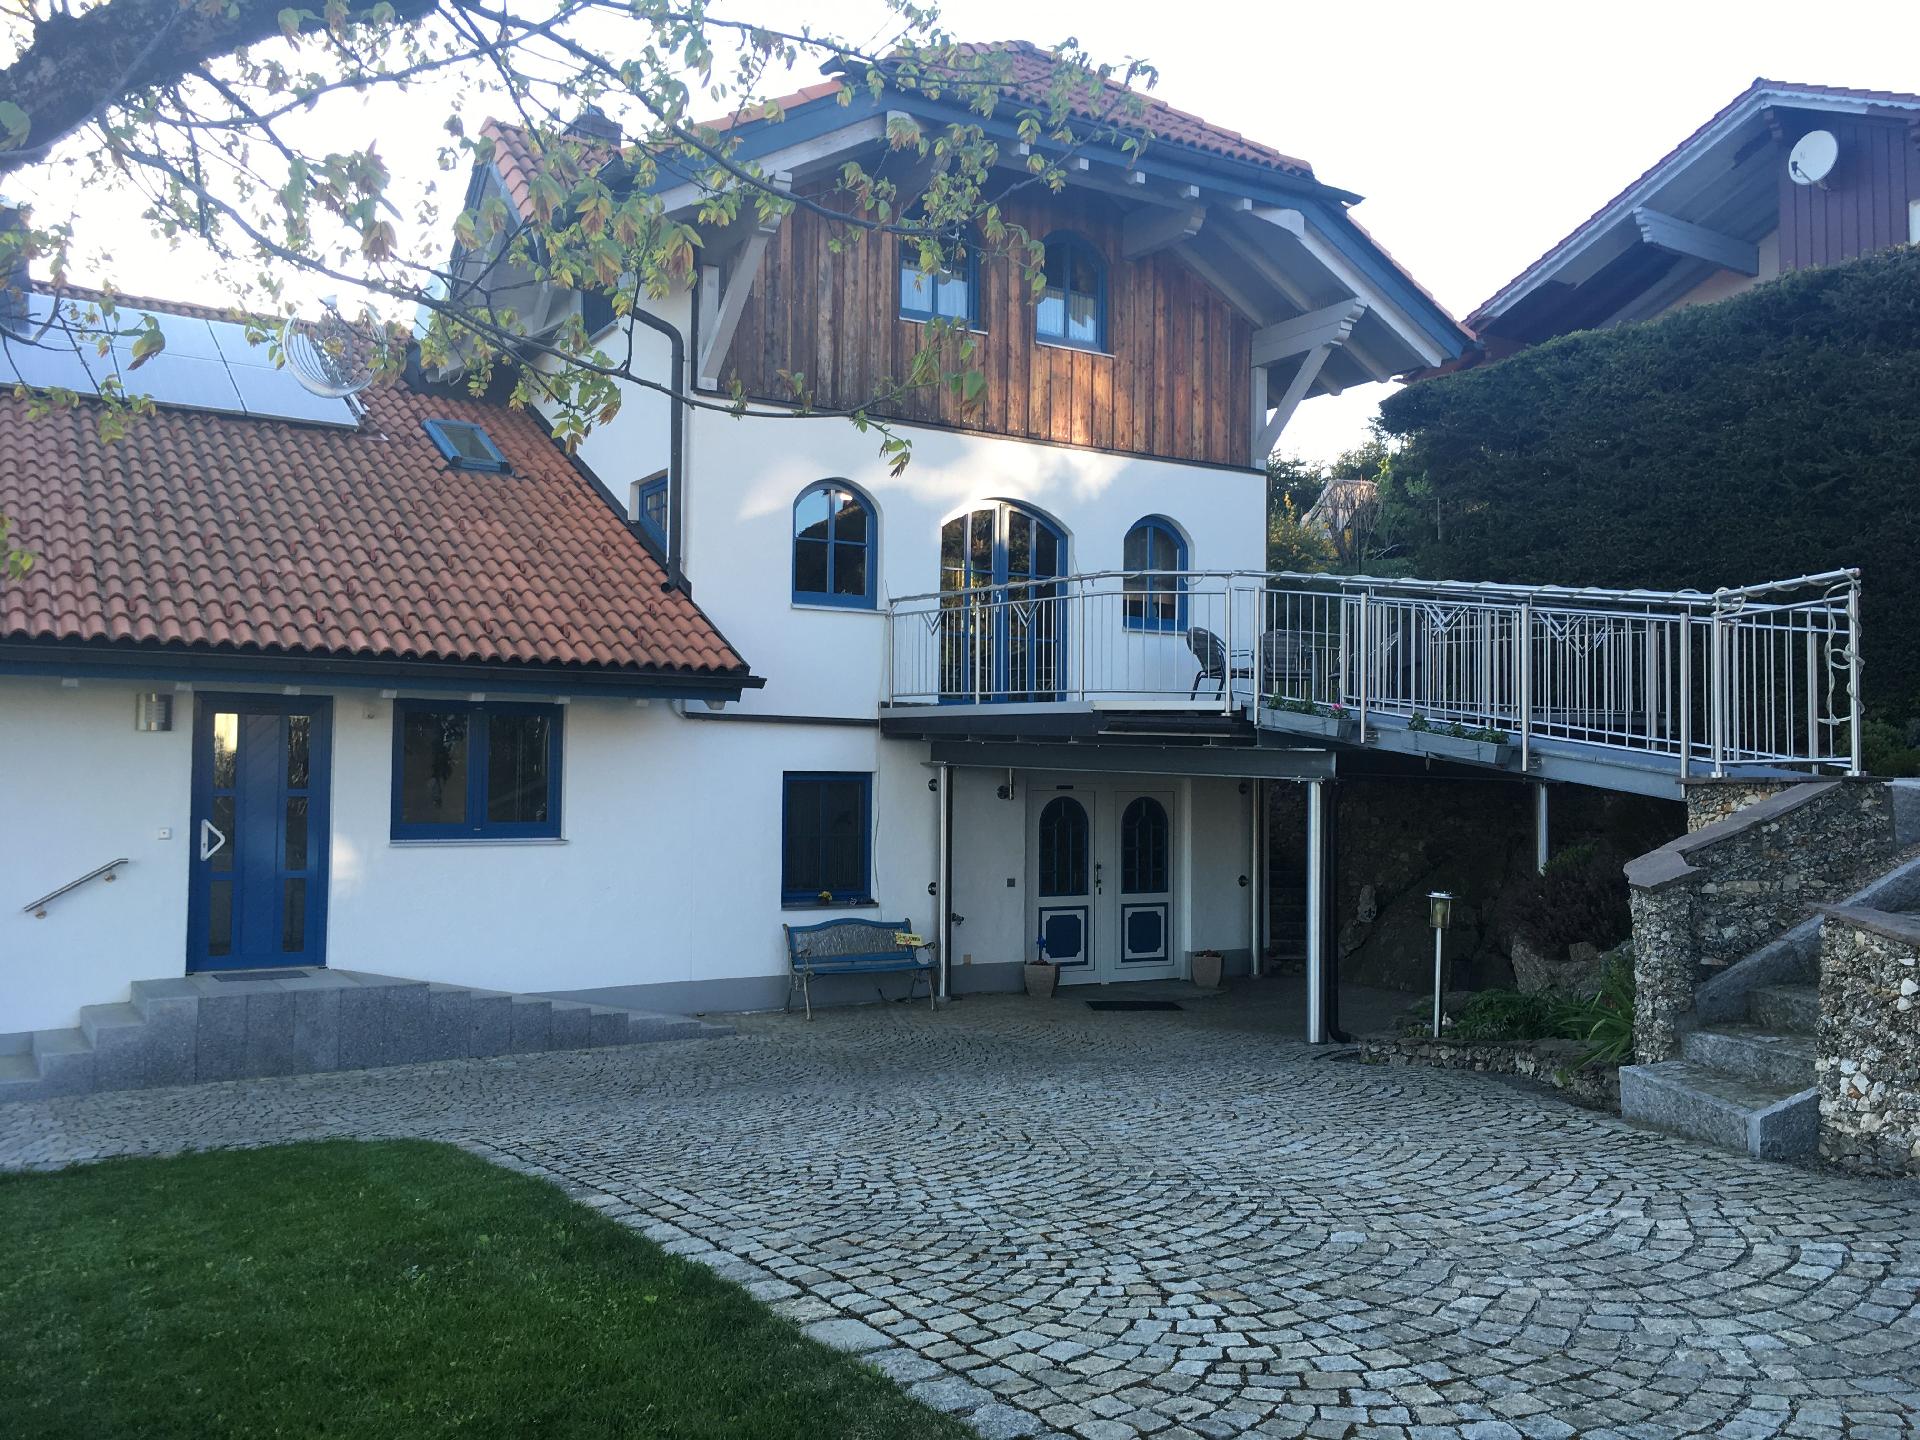 Ferienwohnung für 2 Personen ca. 80 m² i Ferienhaus in Deutschland